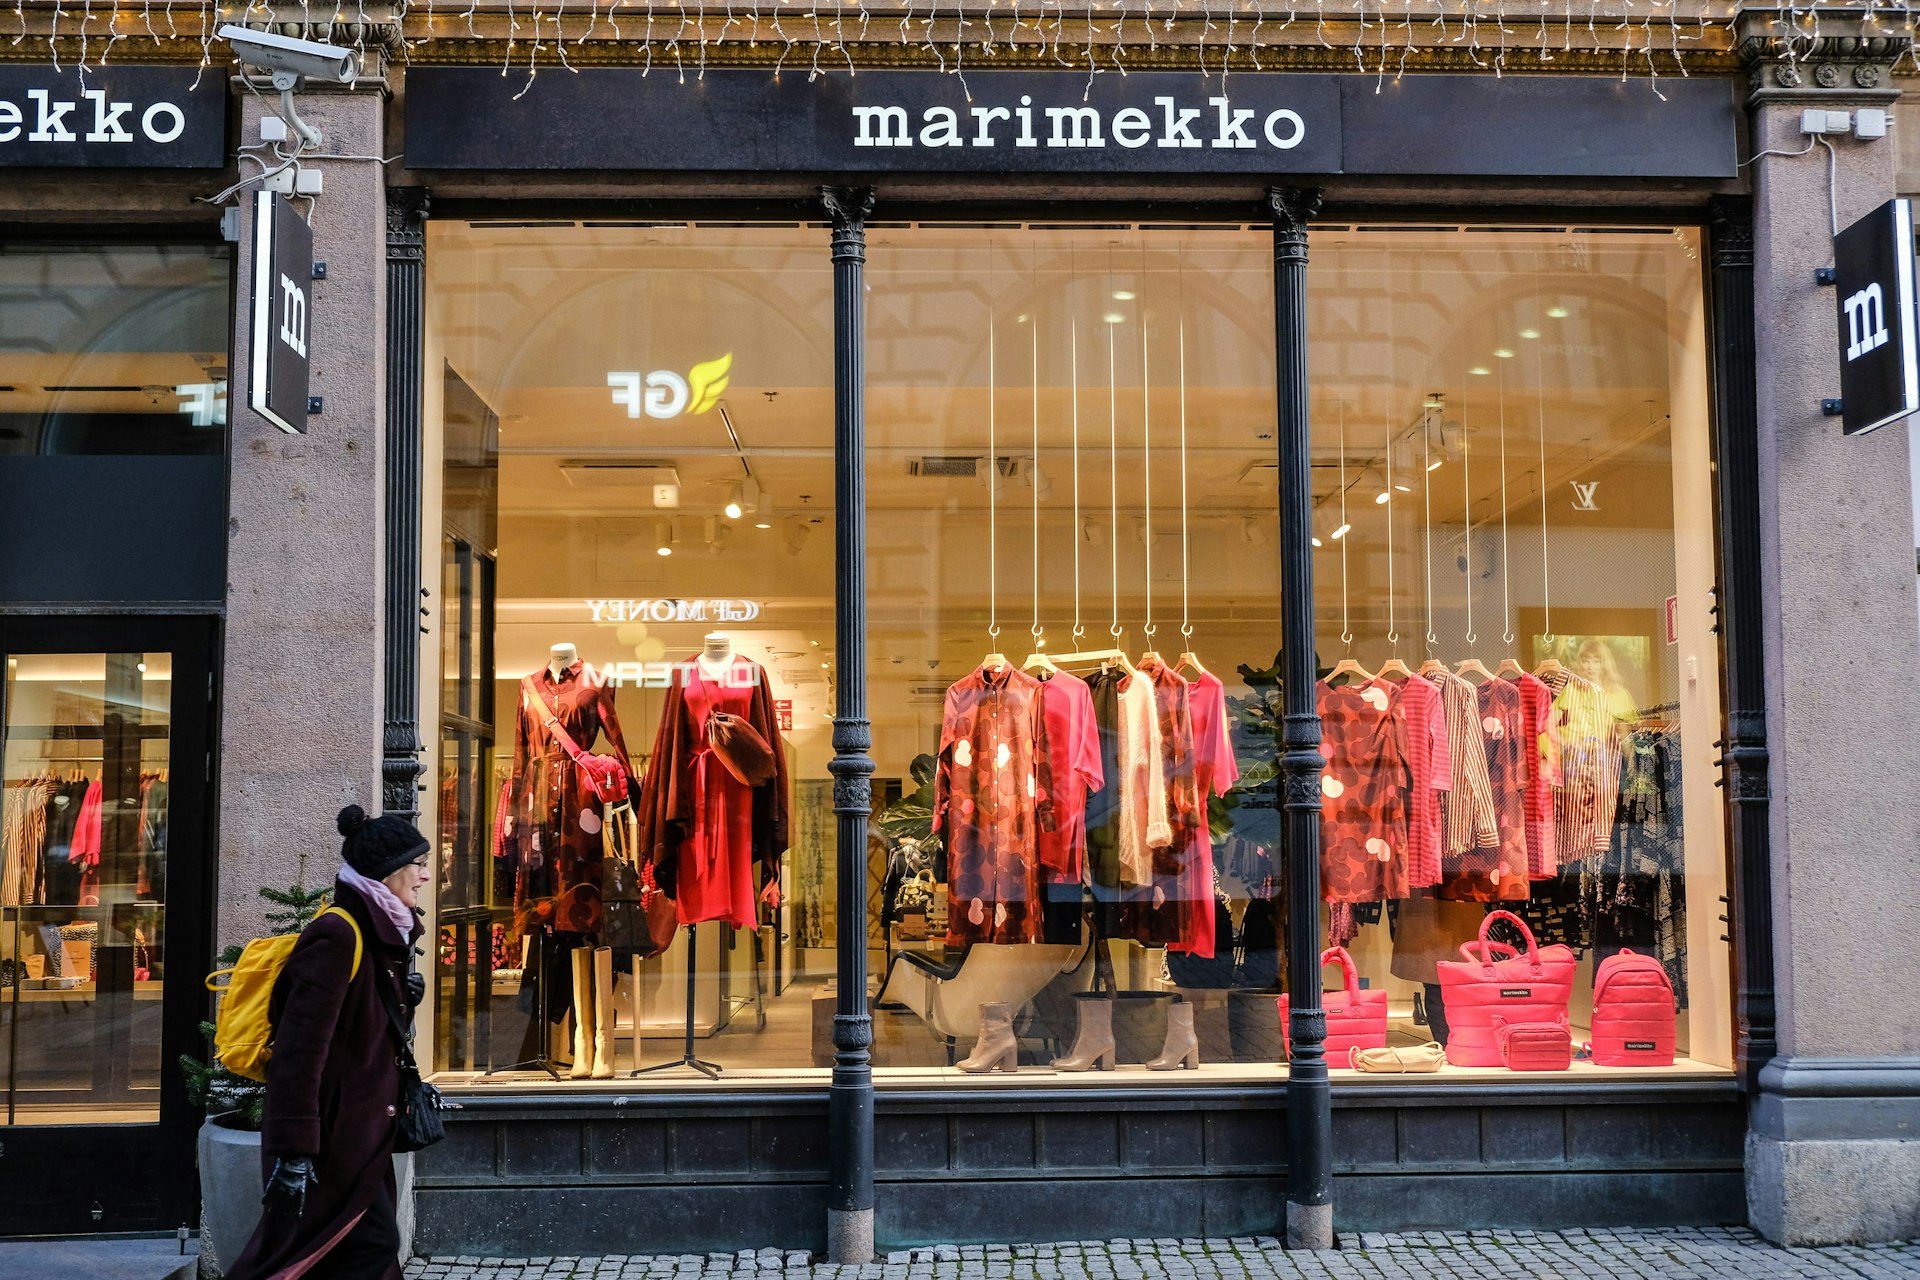 A woman walks past the window display of a Marimekko store in Helsinki © Tim Bird / Lonely Planet